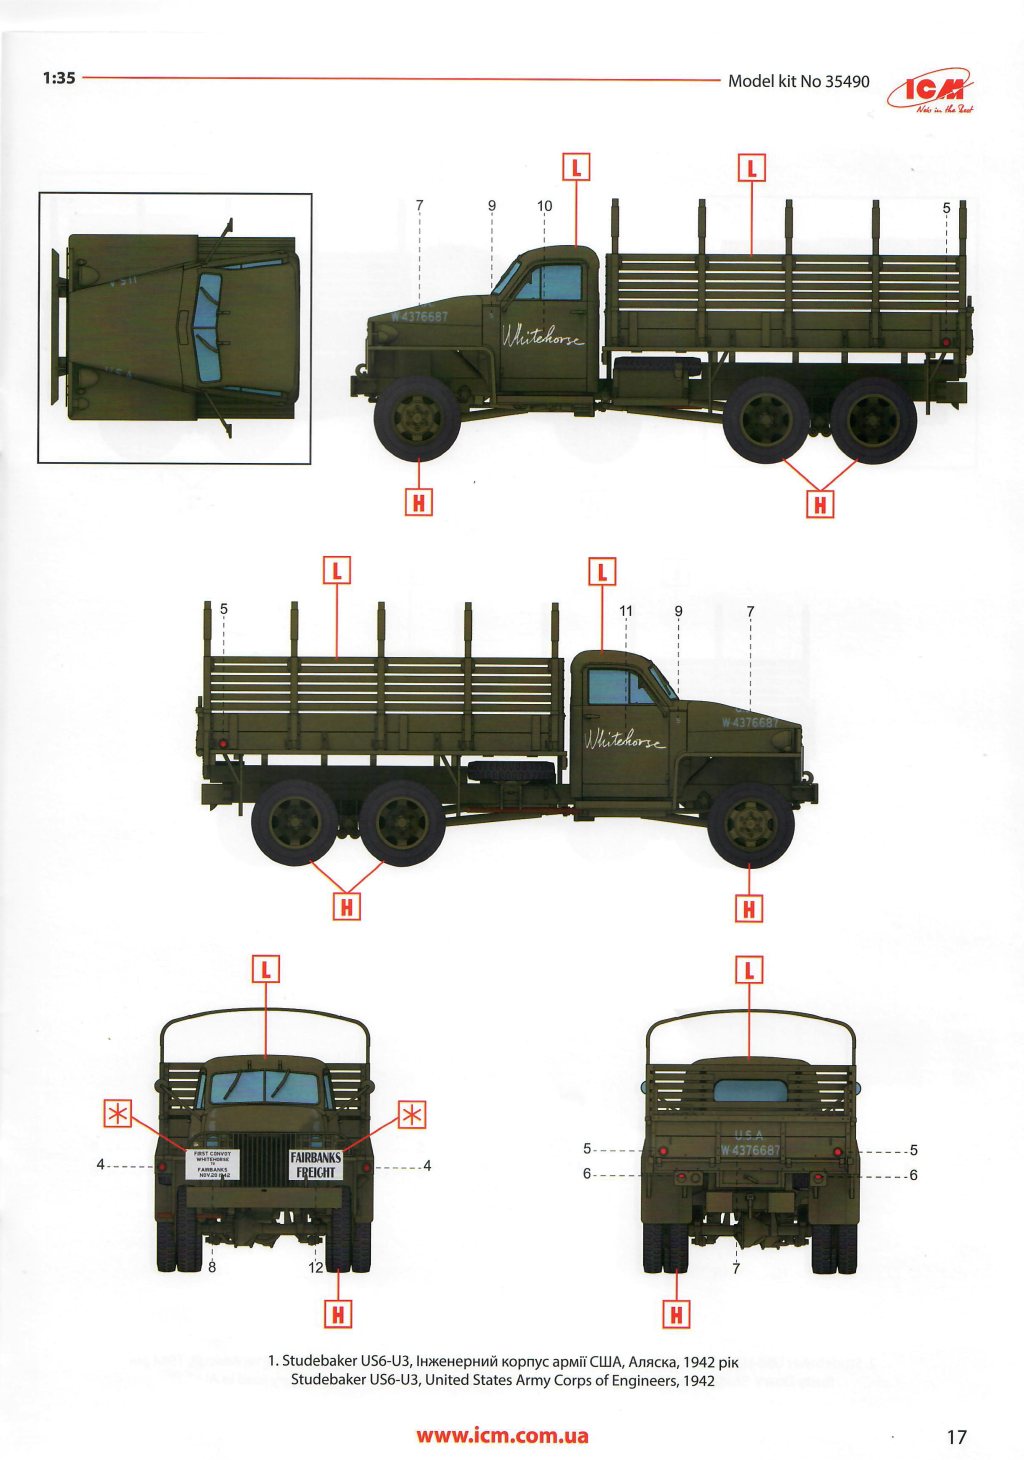 ICM-35490-Studebaker-US-truck-4 Studebaker - LKW US 6 U-3 in 1:35 von ICM # 35490